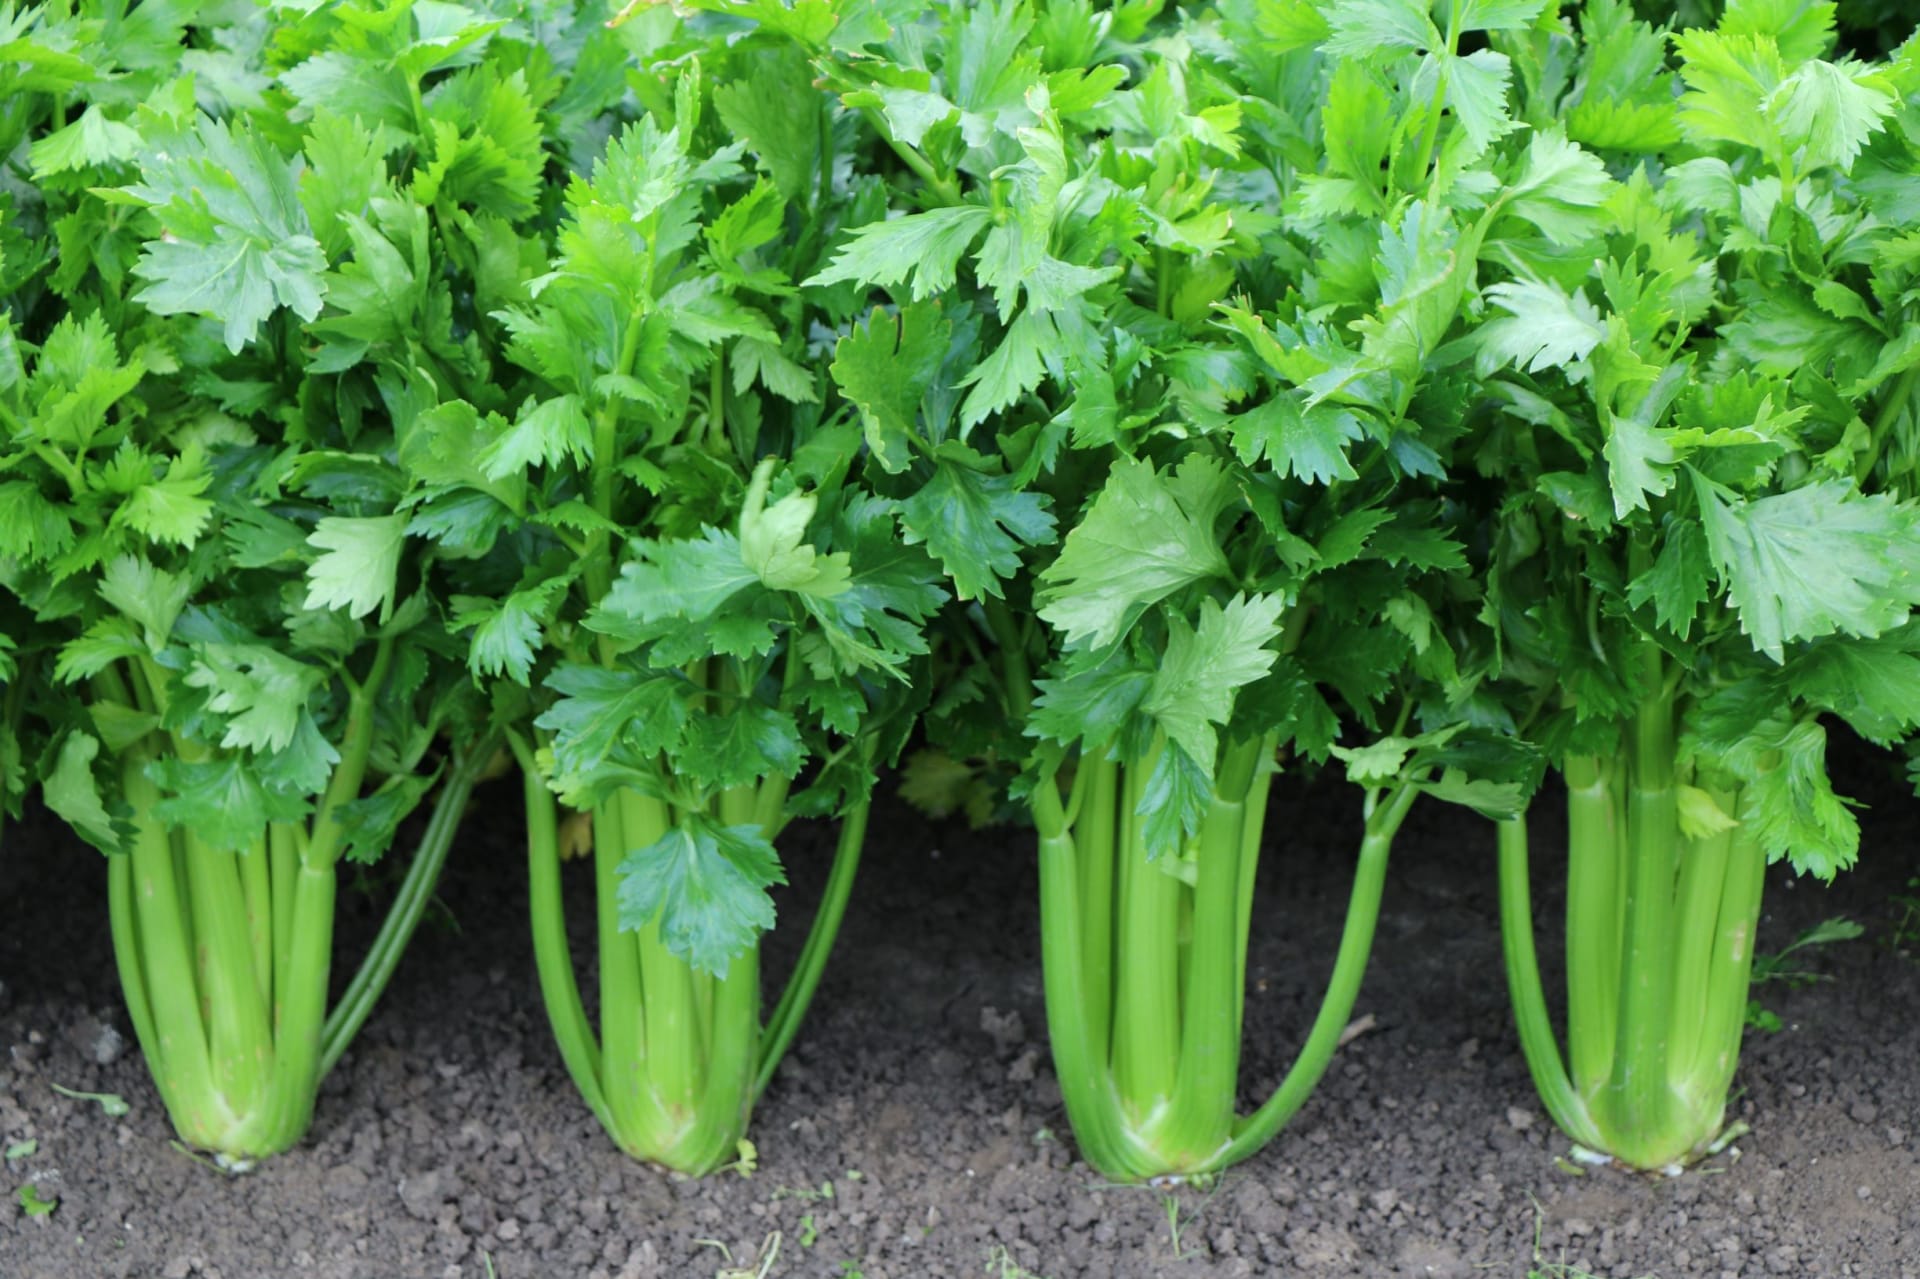 Řapíkatý celer je z dietetického hlediska hodnotnější než bulvový, obsahuje spoustu vitaminu C (dokonce více než citron), vitaminy K, E a především kyselinu listovou